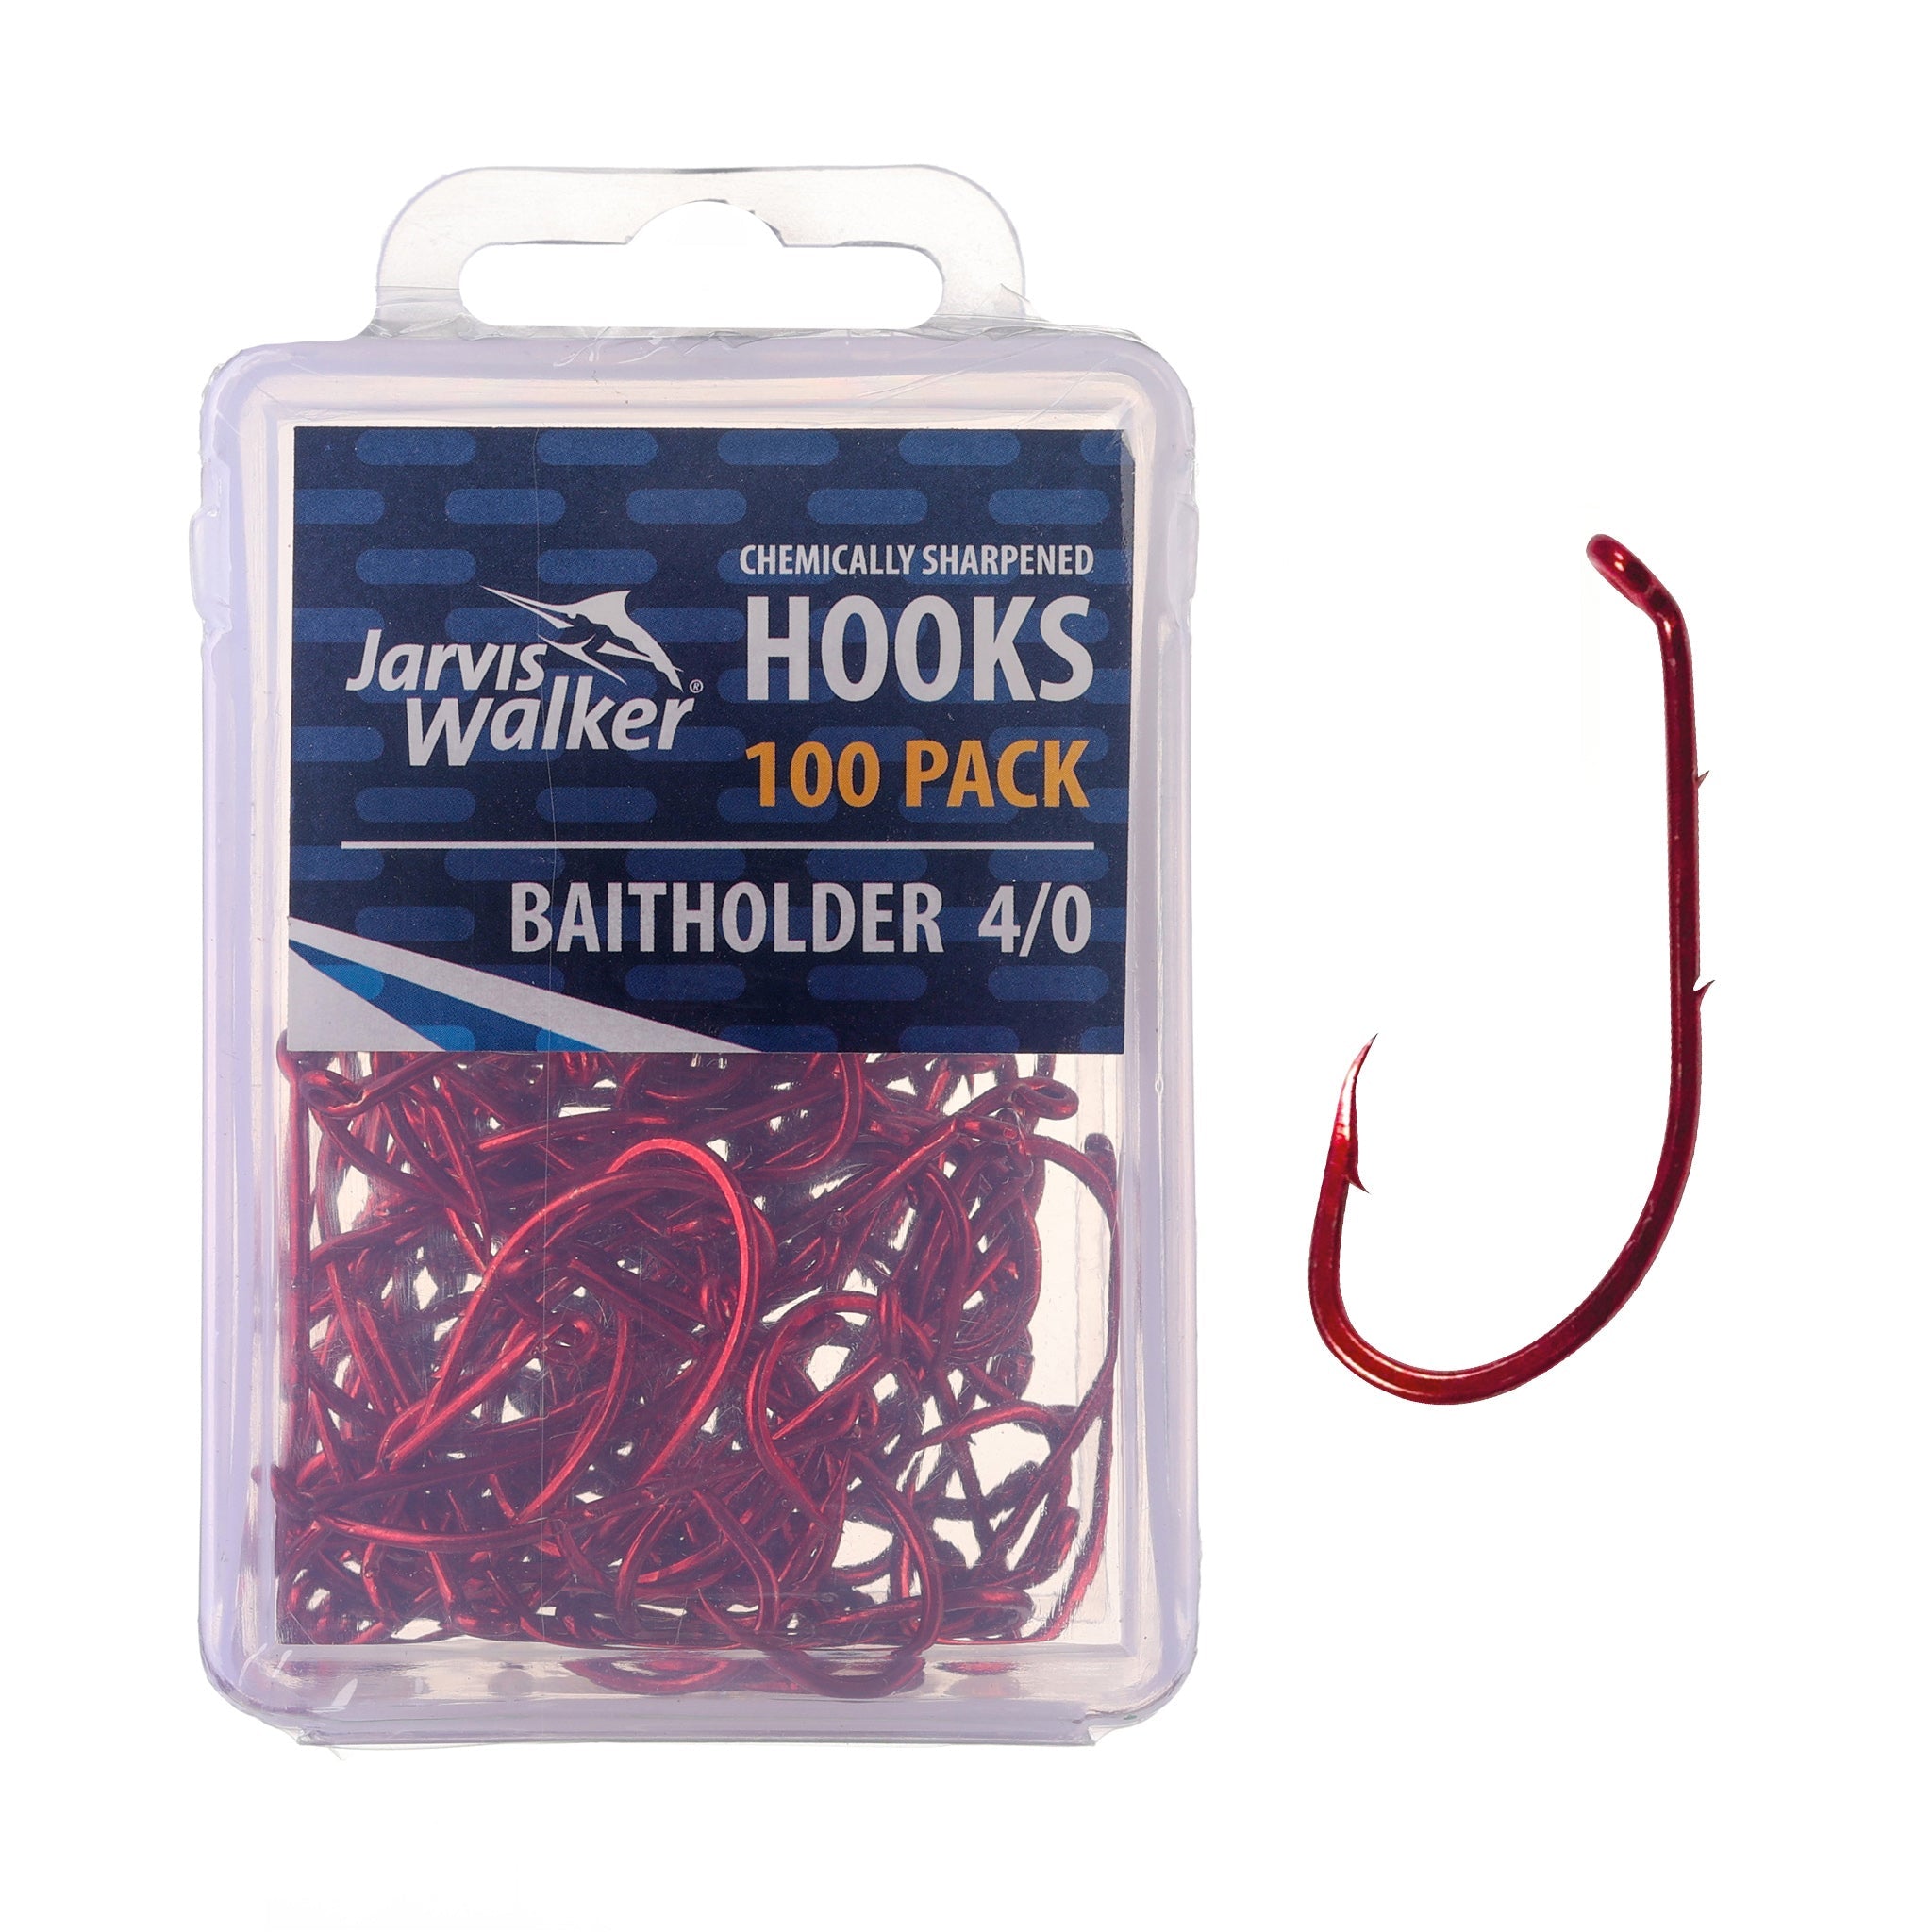 Jarvis Walker Chemically Sharpened Baitholder Hooks - 100 Packs